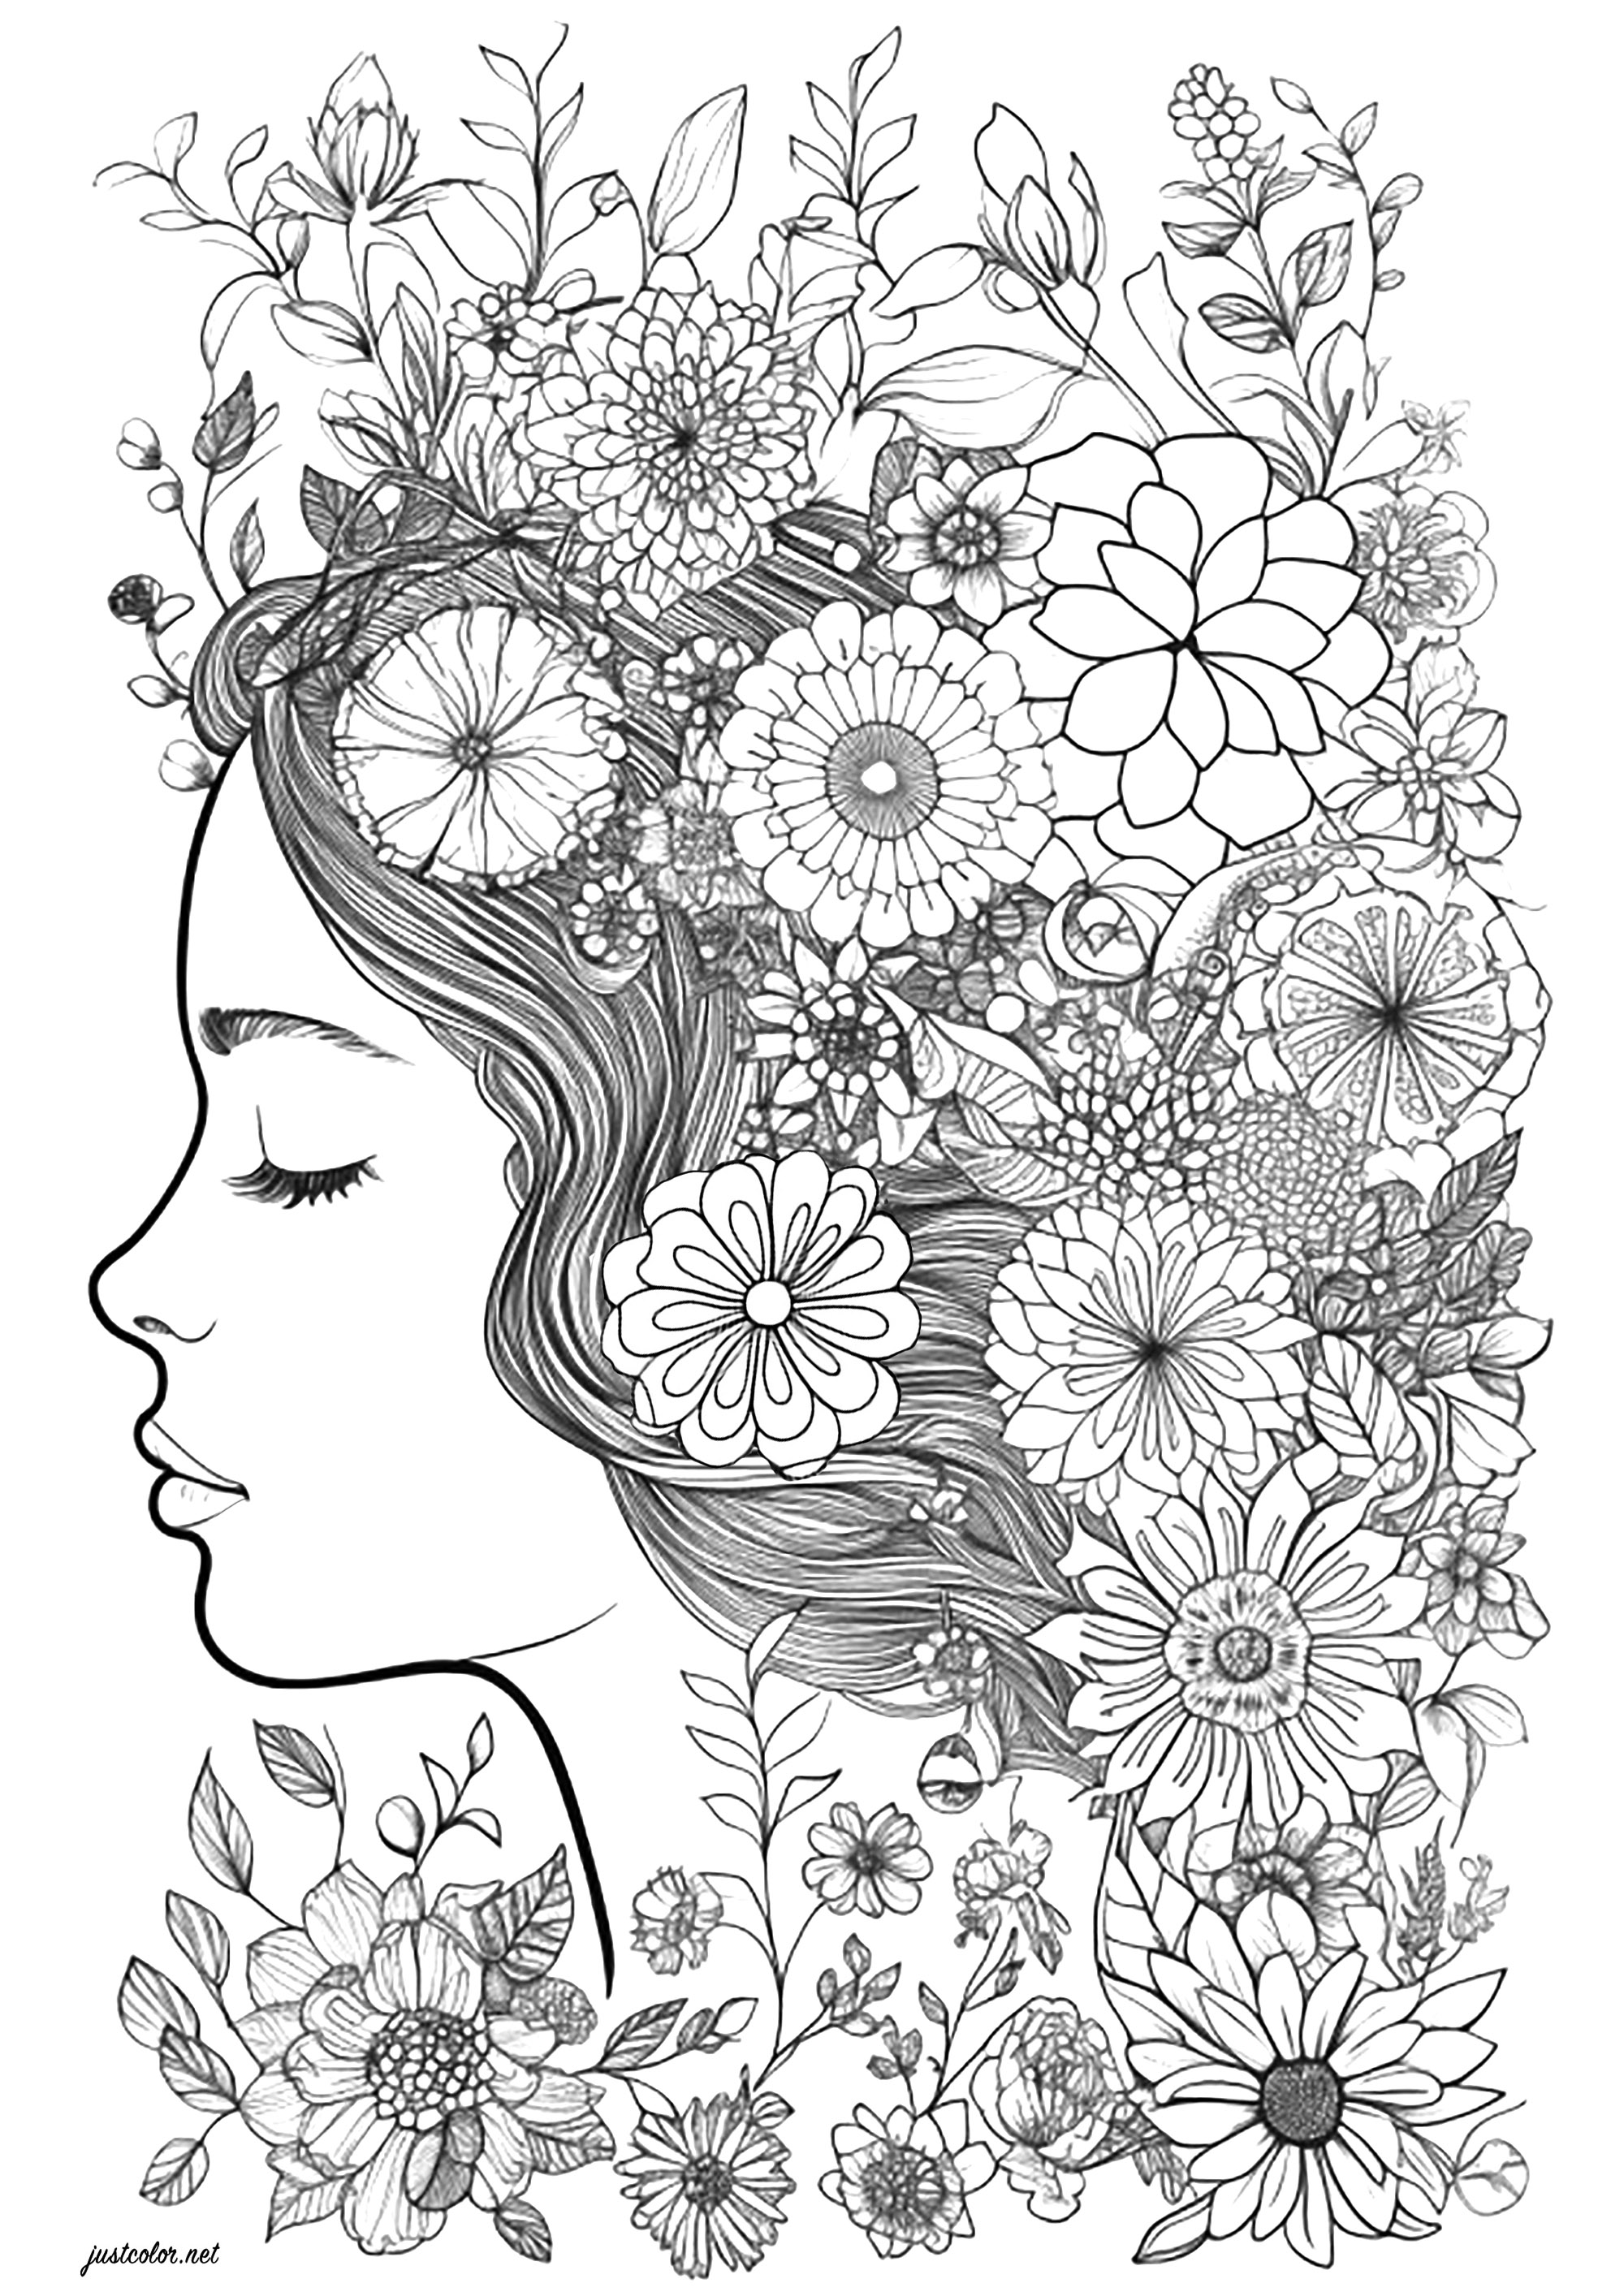 Visage de femme aux yeux fermés, entouré de fleurs. Superbe coloriage d'un visage de femme de profil, dont la chevelure est remplie de jolies fleurs